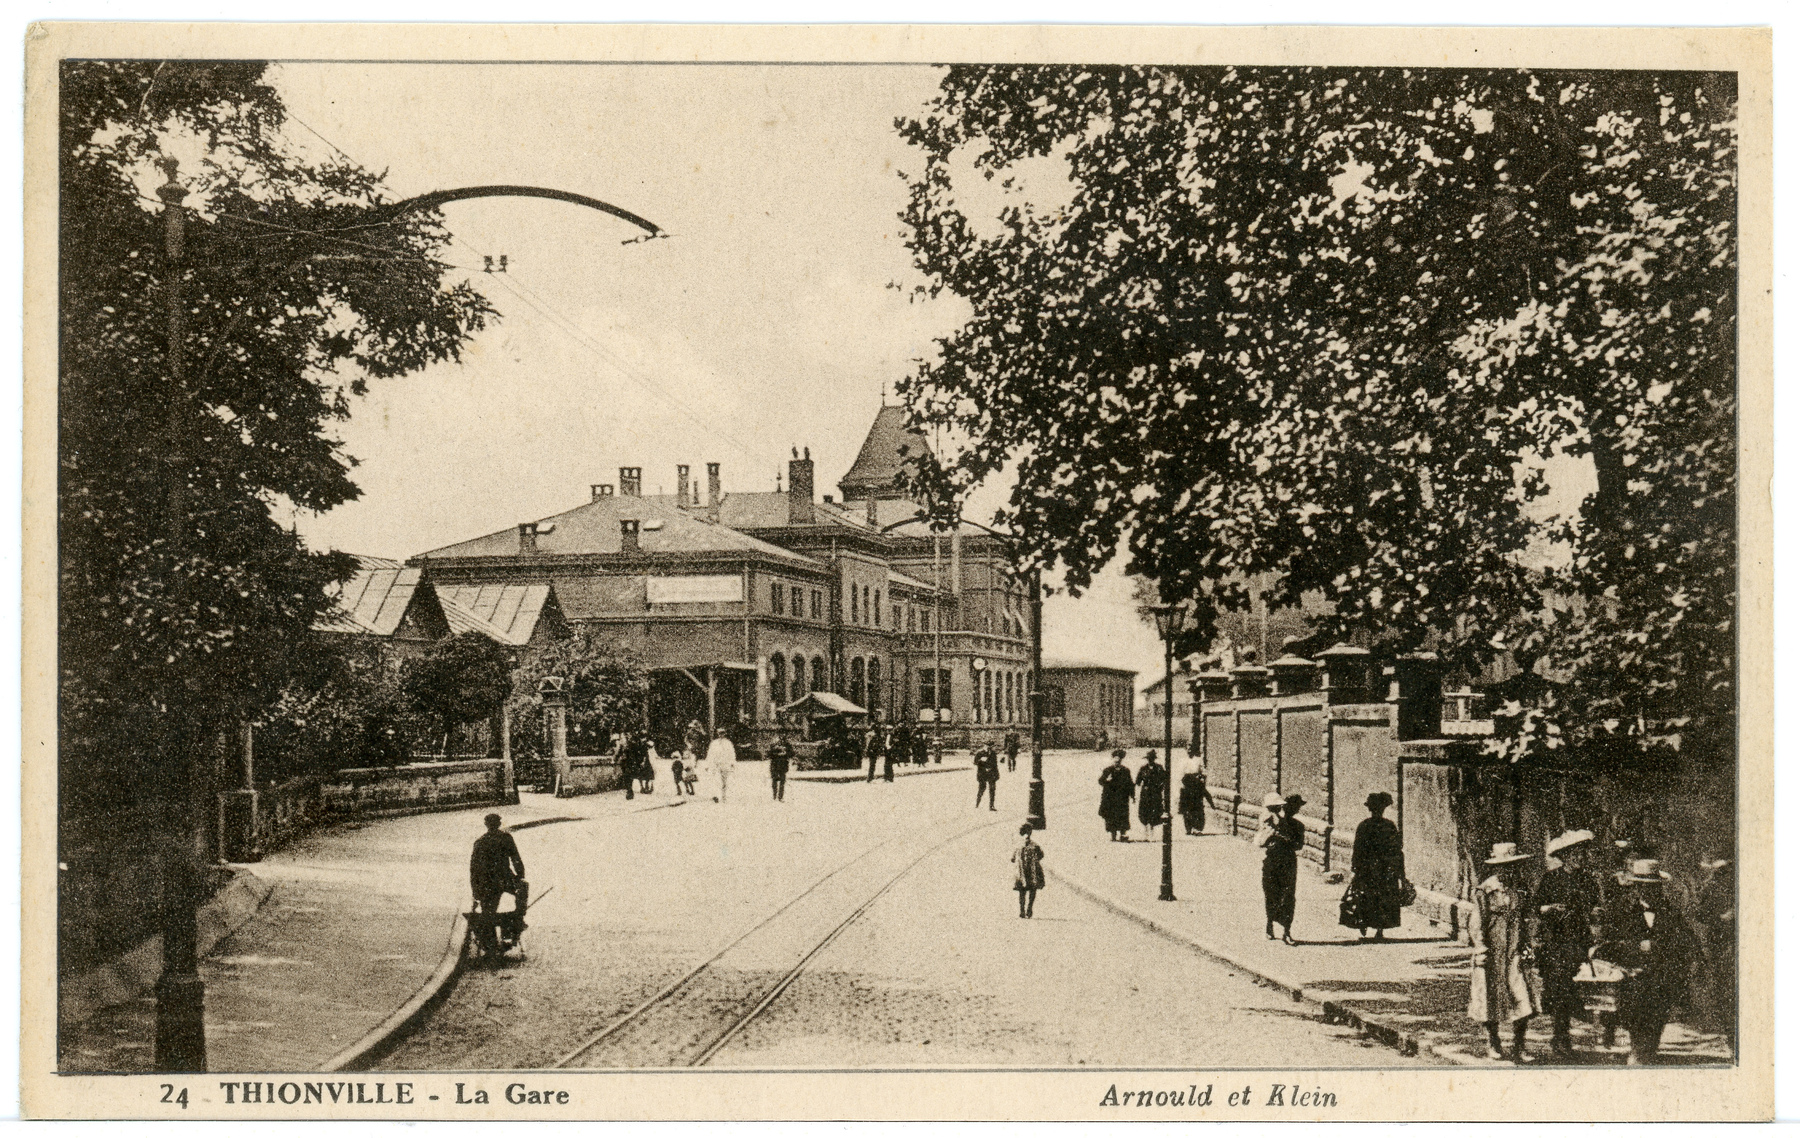 Contenu du Thionville - La Gare